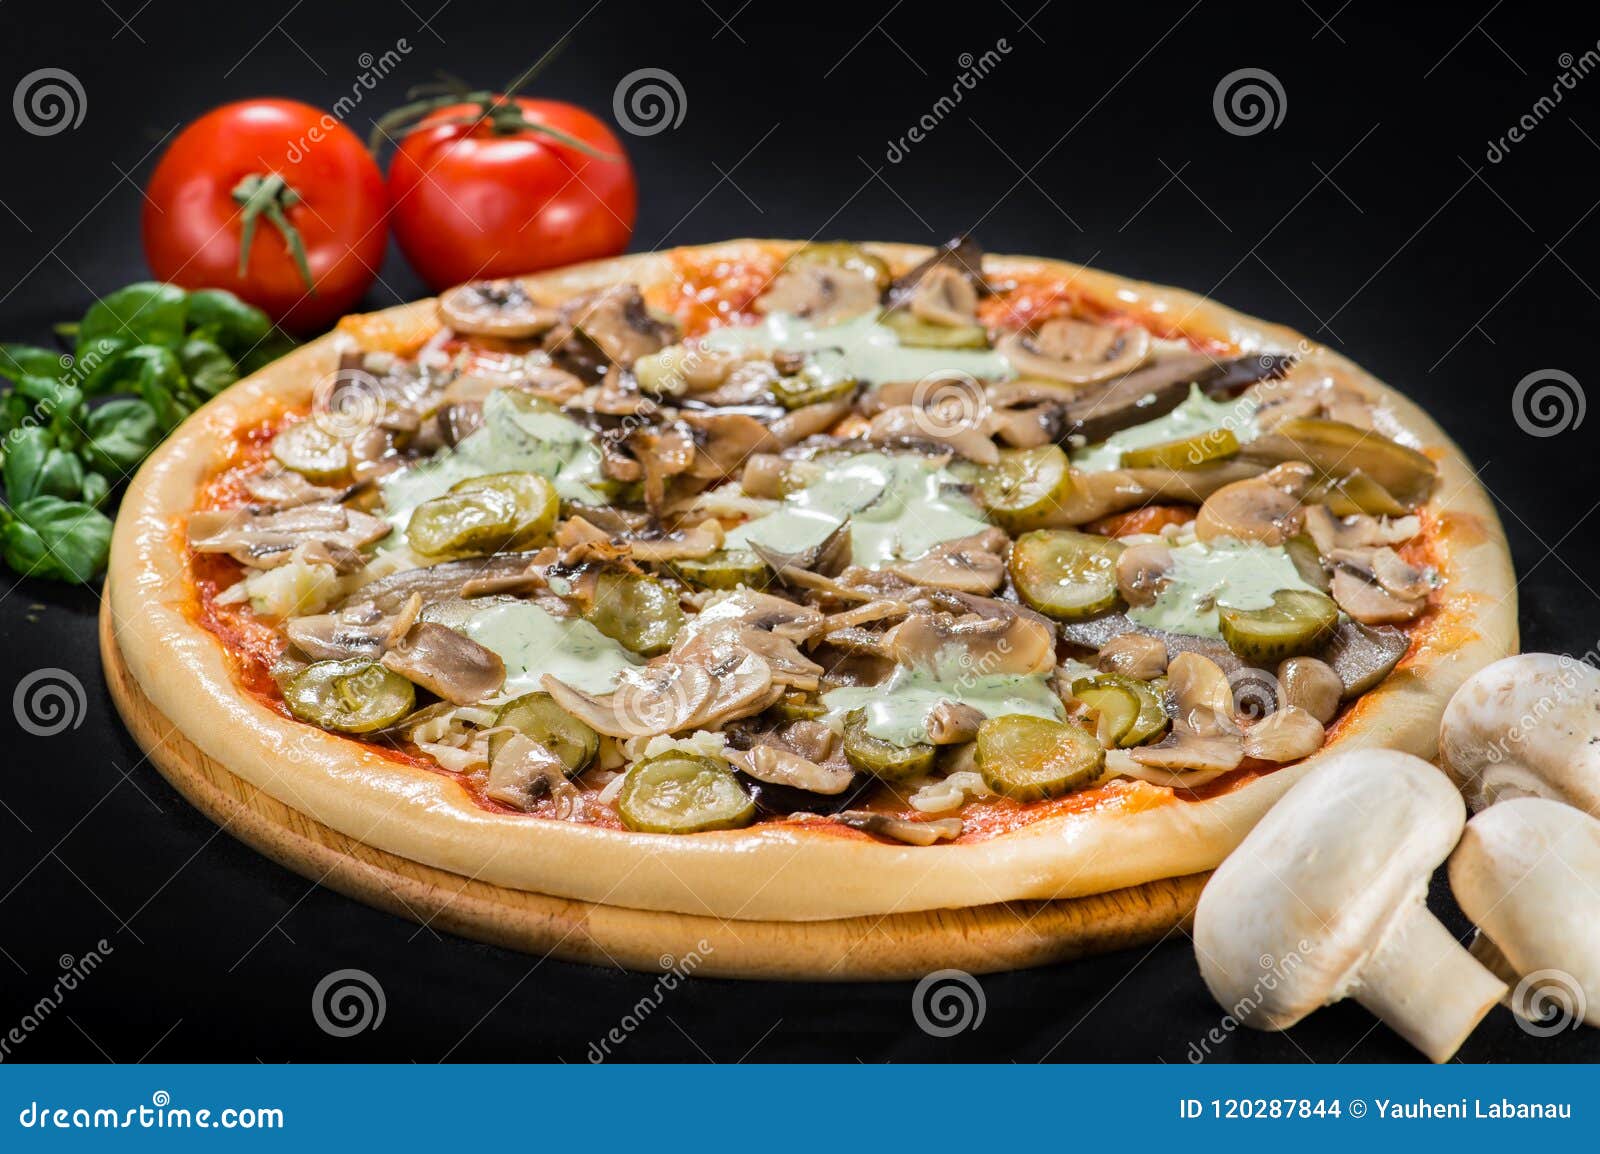 рецепт домашней пиццы с колбасой сыром помидором и шампиньонами фото 87